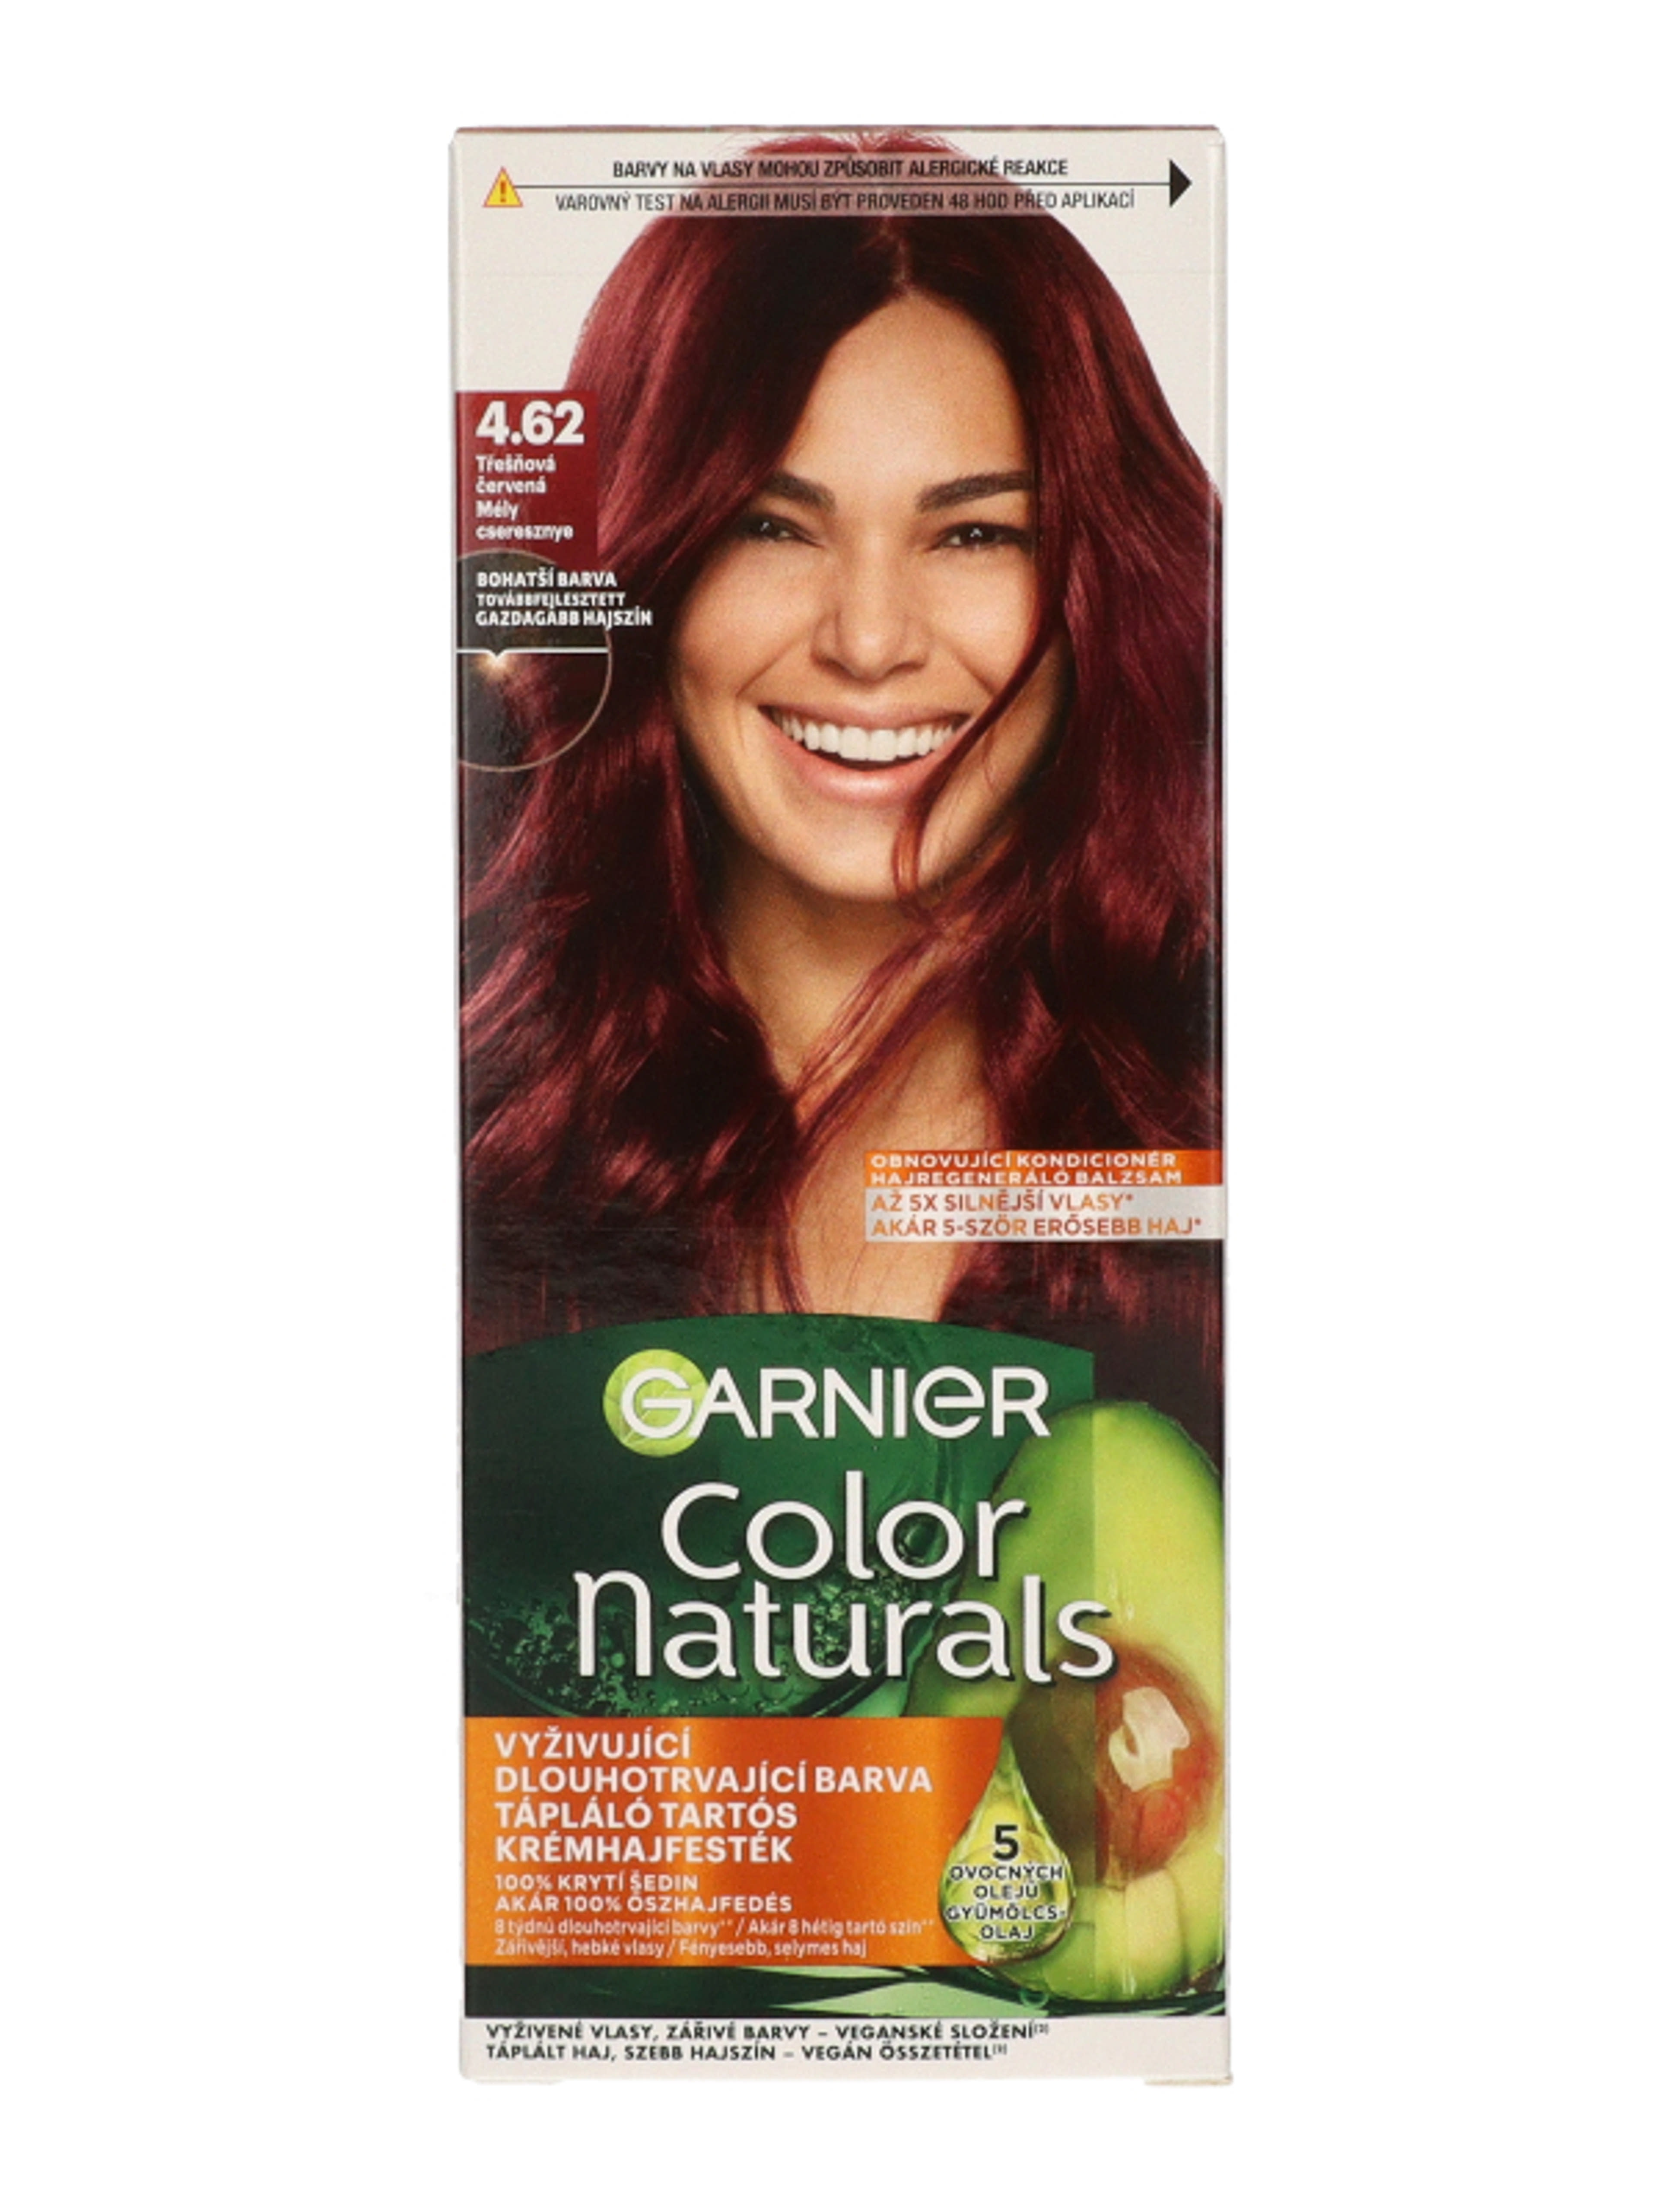 Garnier Color Naturals tartós hajfesték /4.62 mély cseresznye - 1 db-2